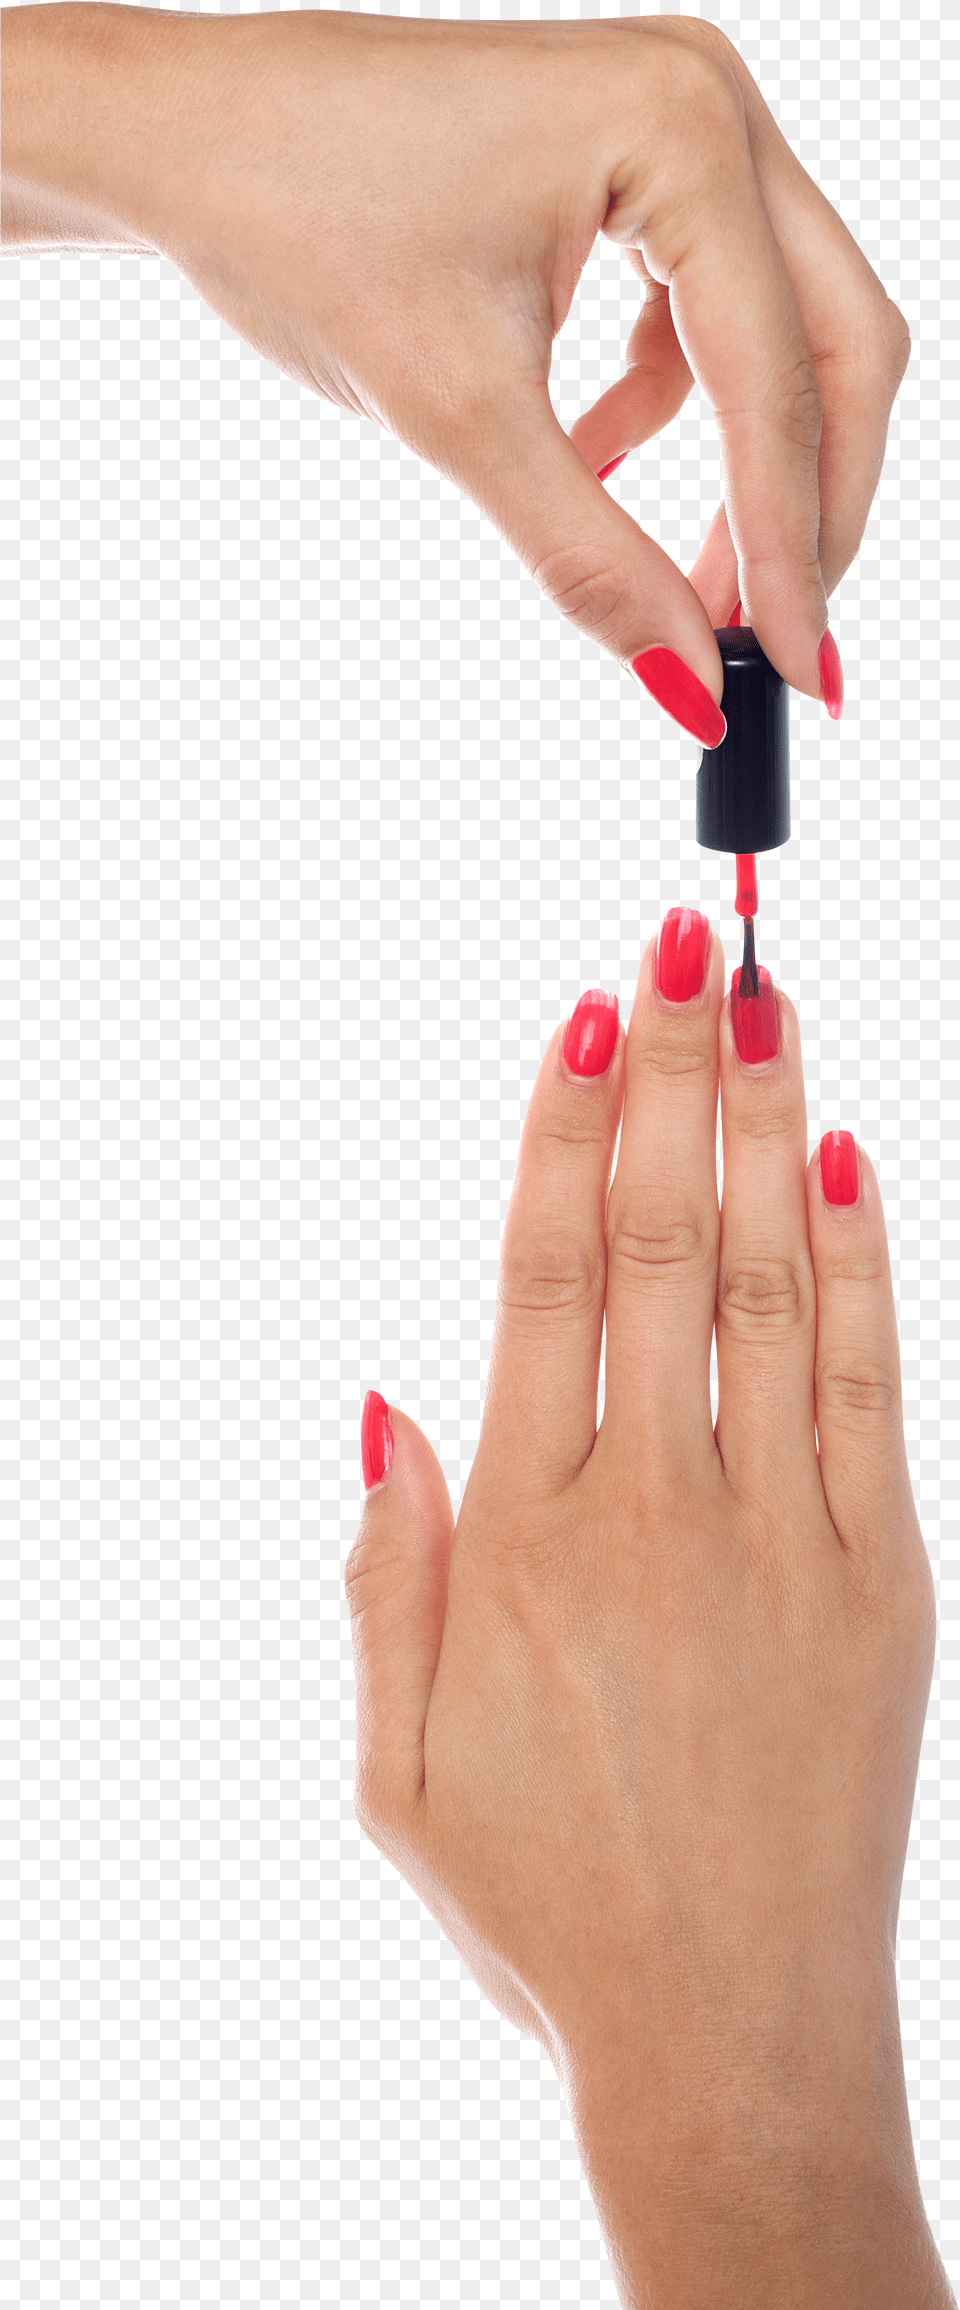 Finger Nail Paint Image Nail, Text Free Png